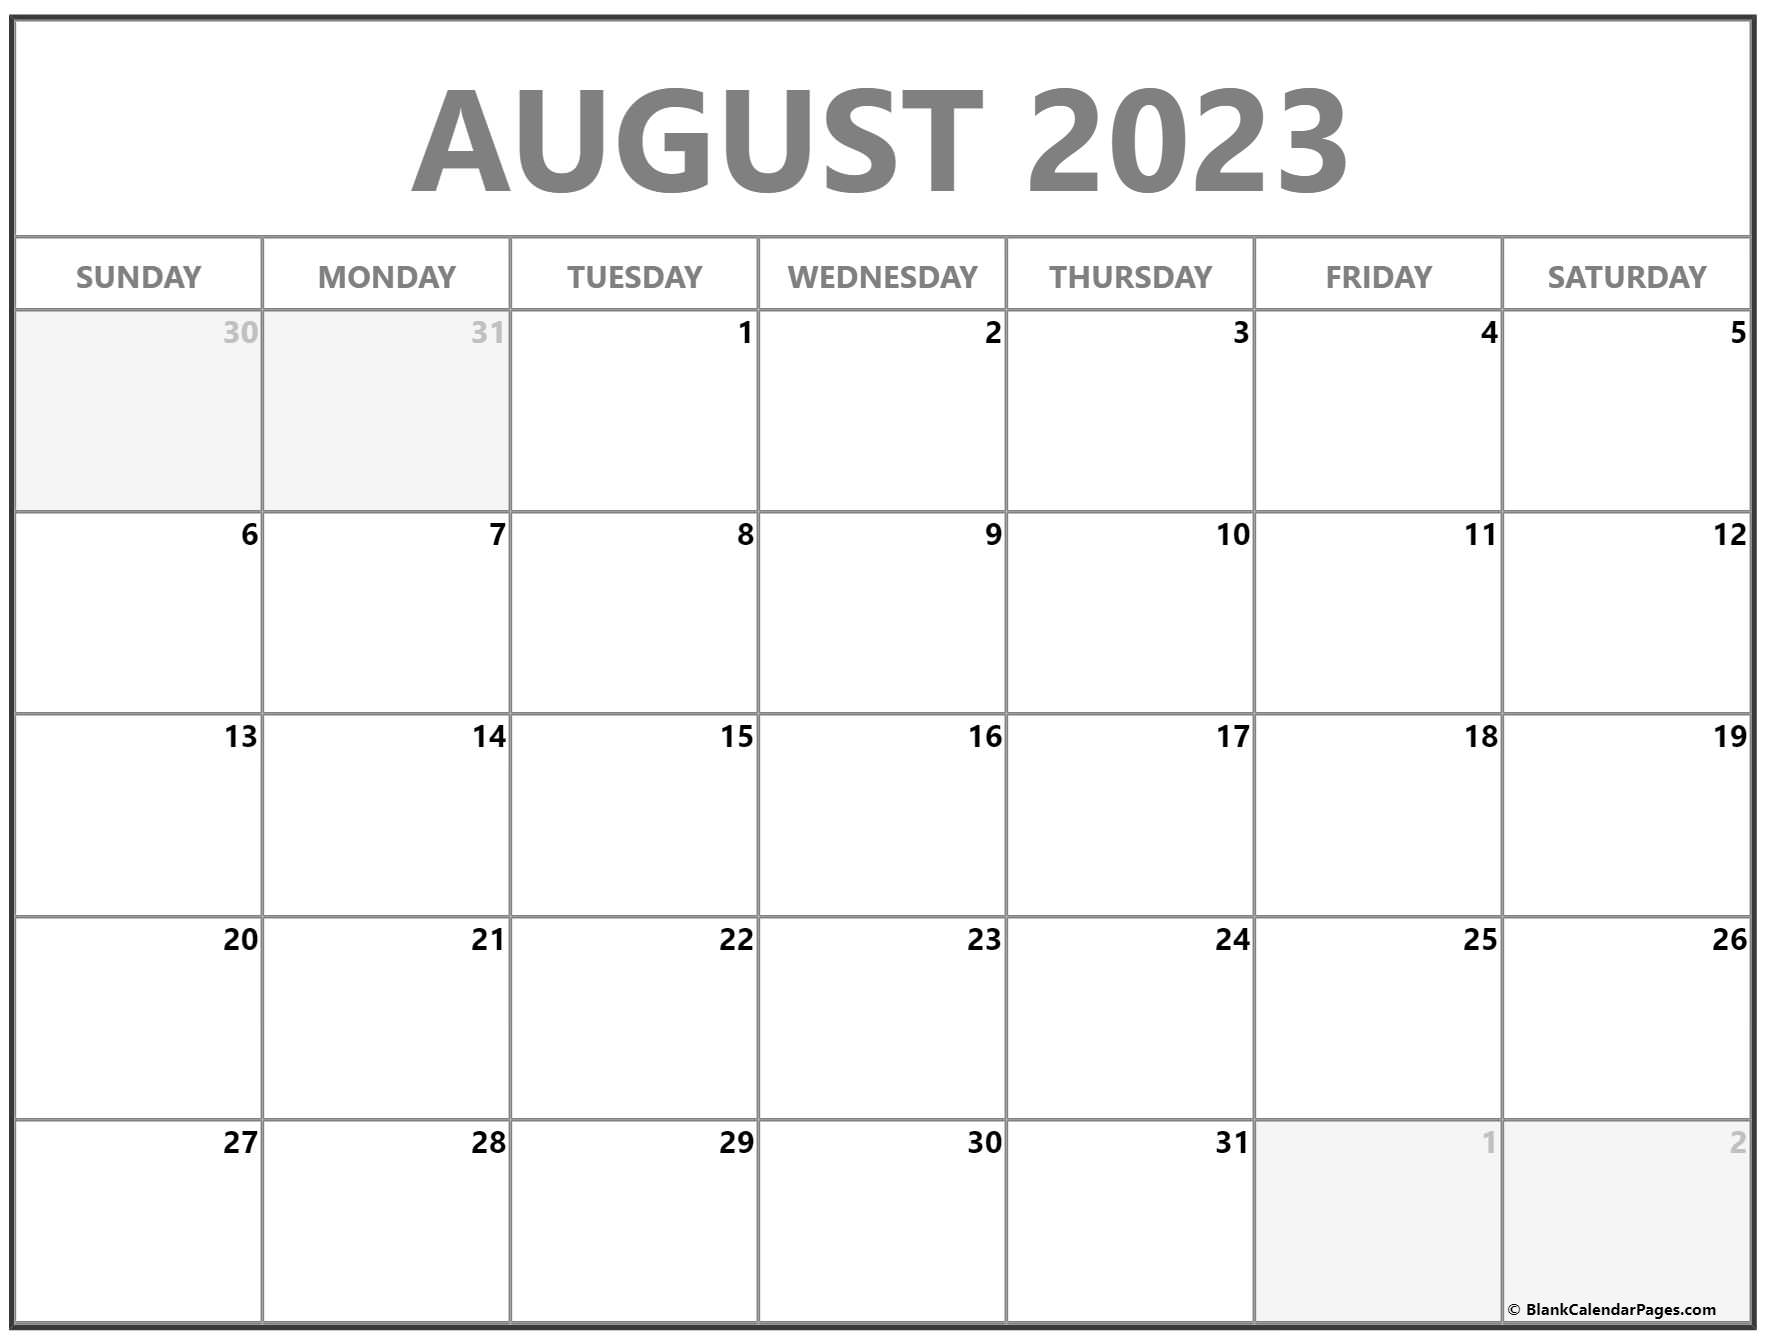 august-2023-calendar-printable-pdf-template-pelajaran